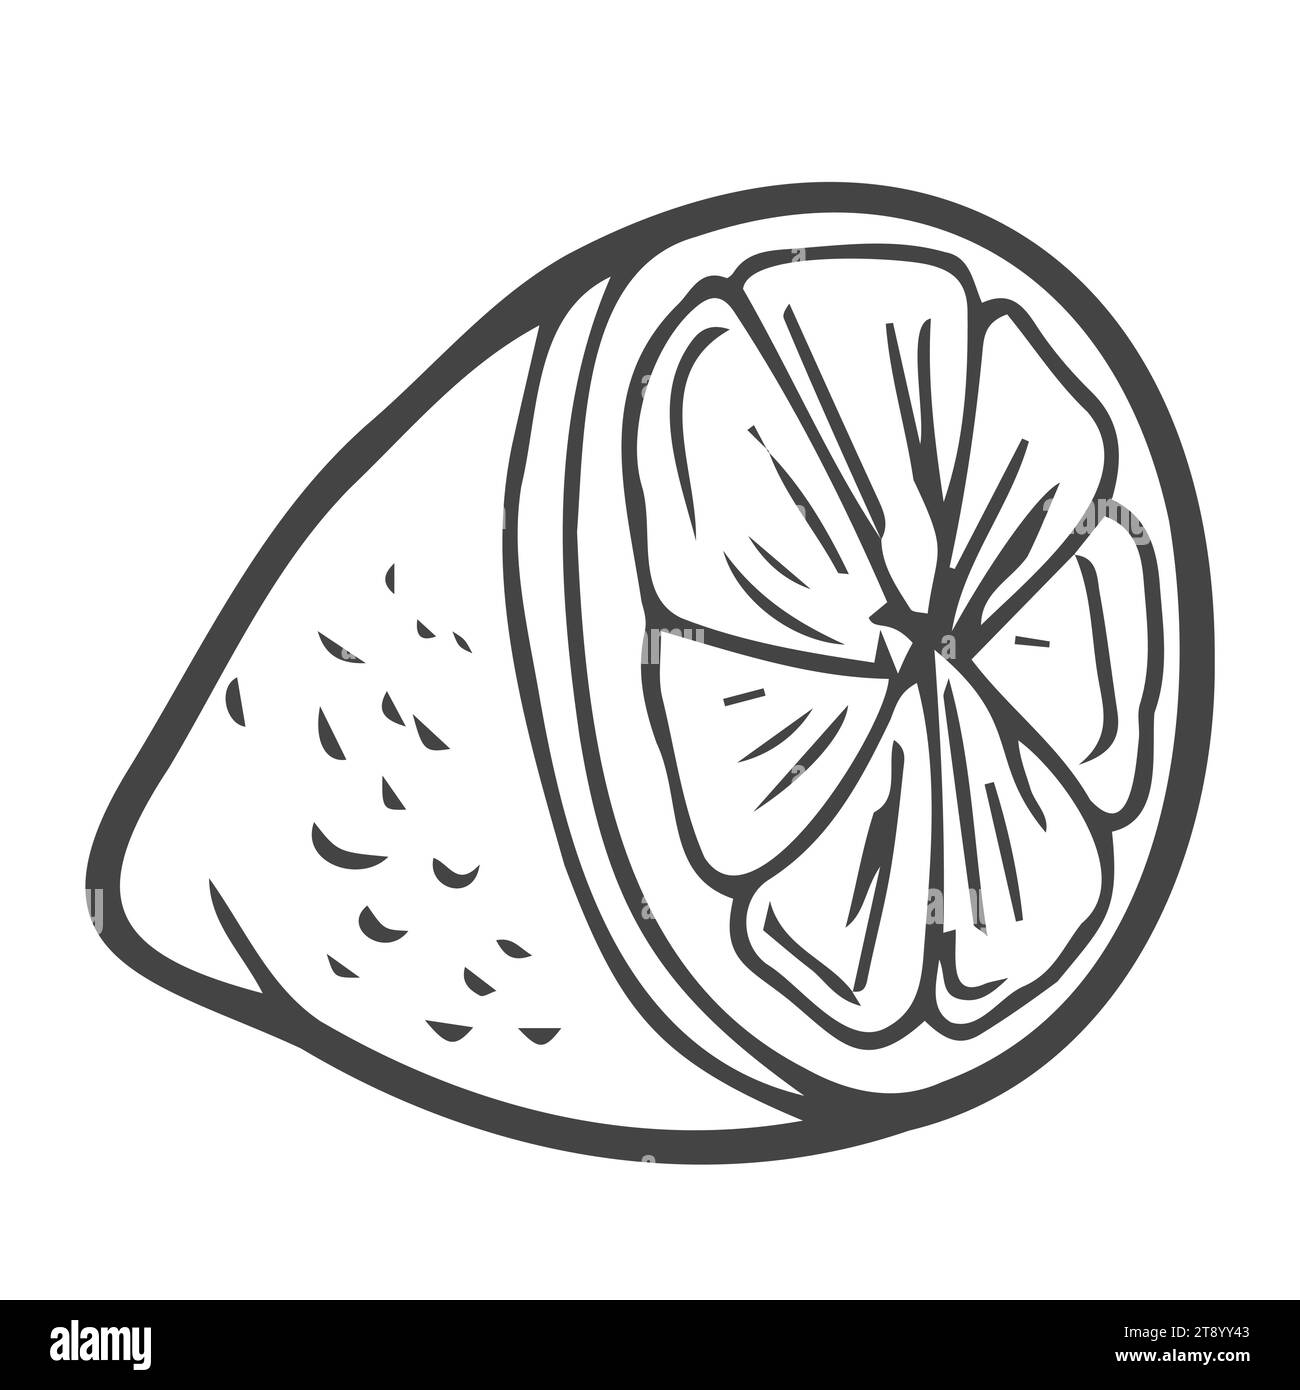 Handgezeichnete Kritzelei-Cartoon-Stil Vektor-Illustration. Sammlung von Zitronen-Limetten-Orangen-Zitrusfrüchten für Menü, Bauernmarkt-Design, Cocktail-Makin Stock Vektor